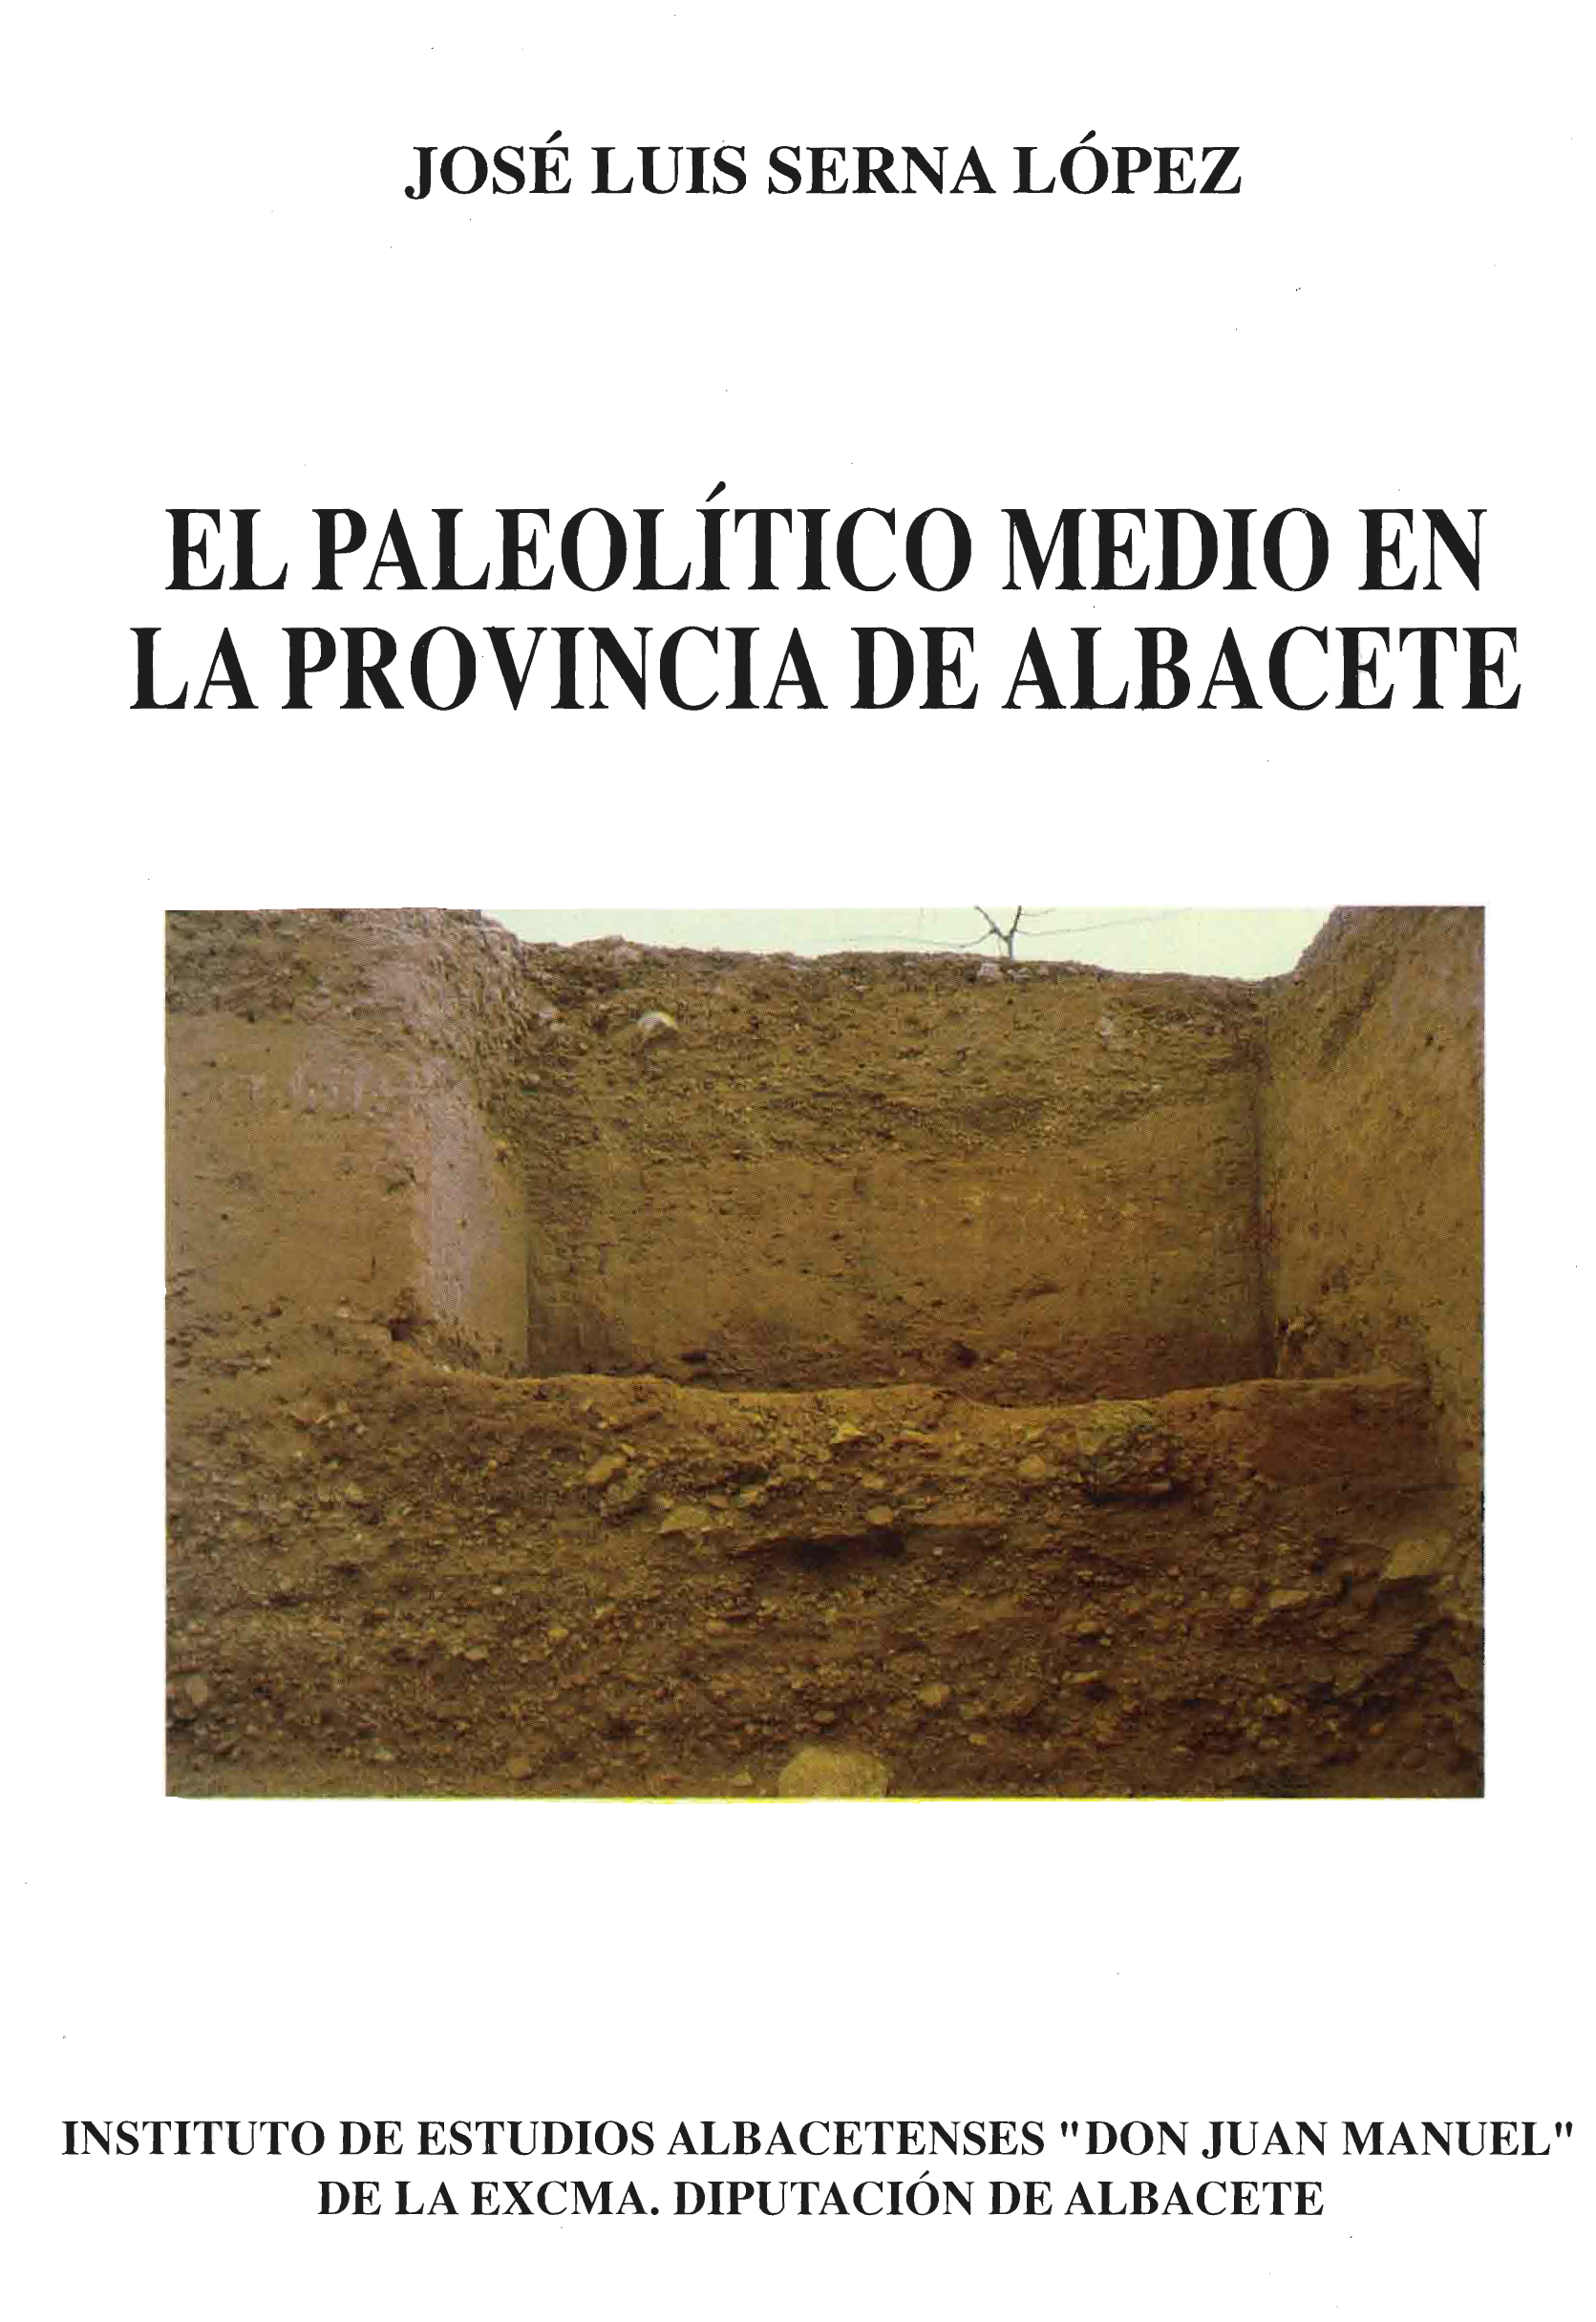 Imagen de portada del libro El paleolítico medio en la provincia de Albacete